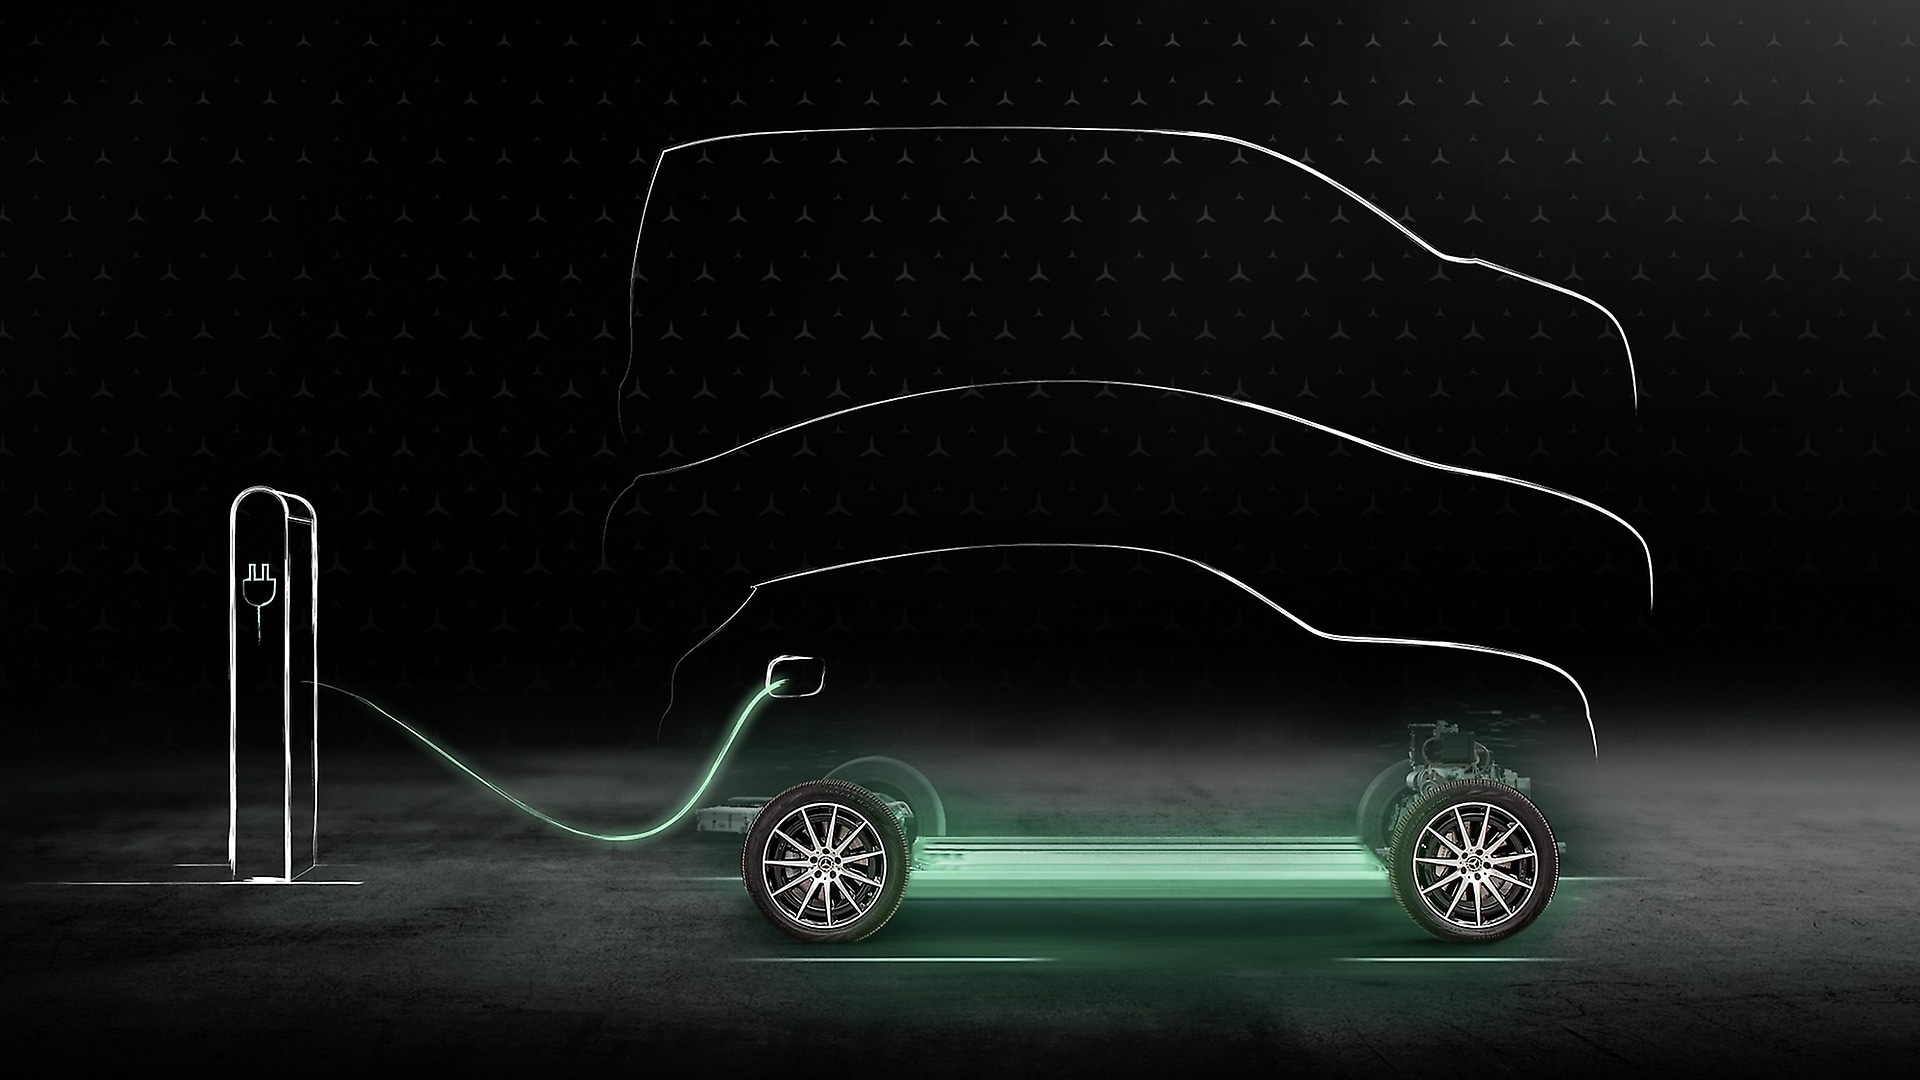 Mercedes-Benz stellt für öffentliches Laden über Mercedes me Charge die Verwendung von Energie aus erneuerbaren Ressourcen sicher